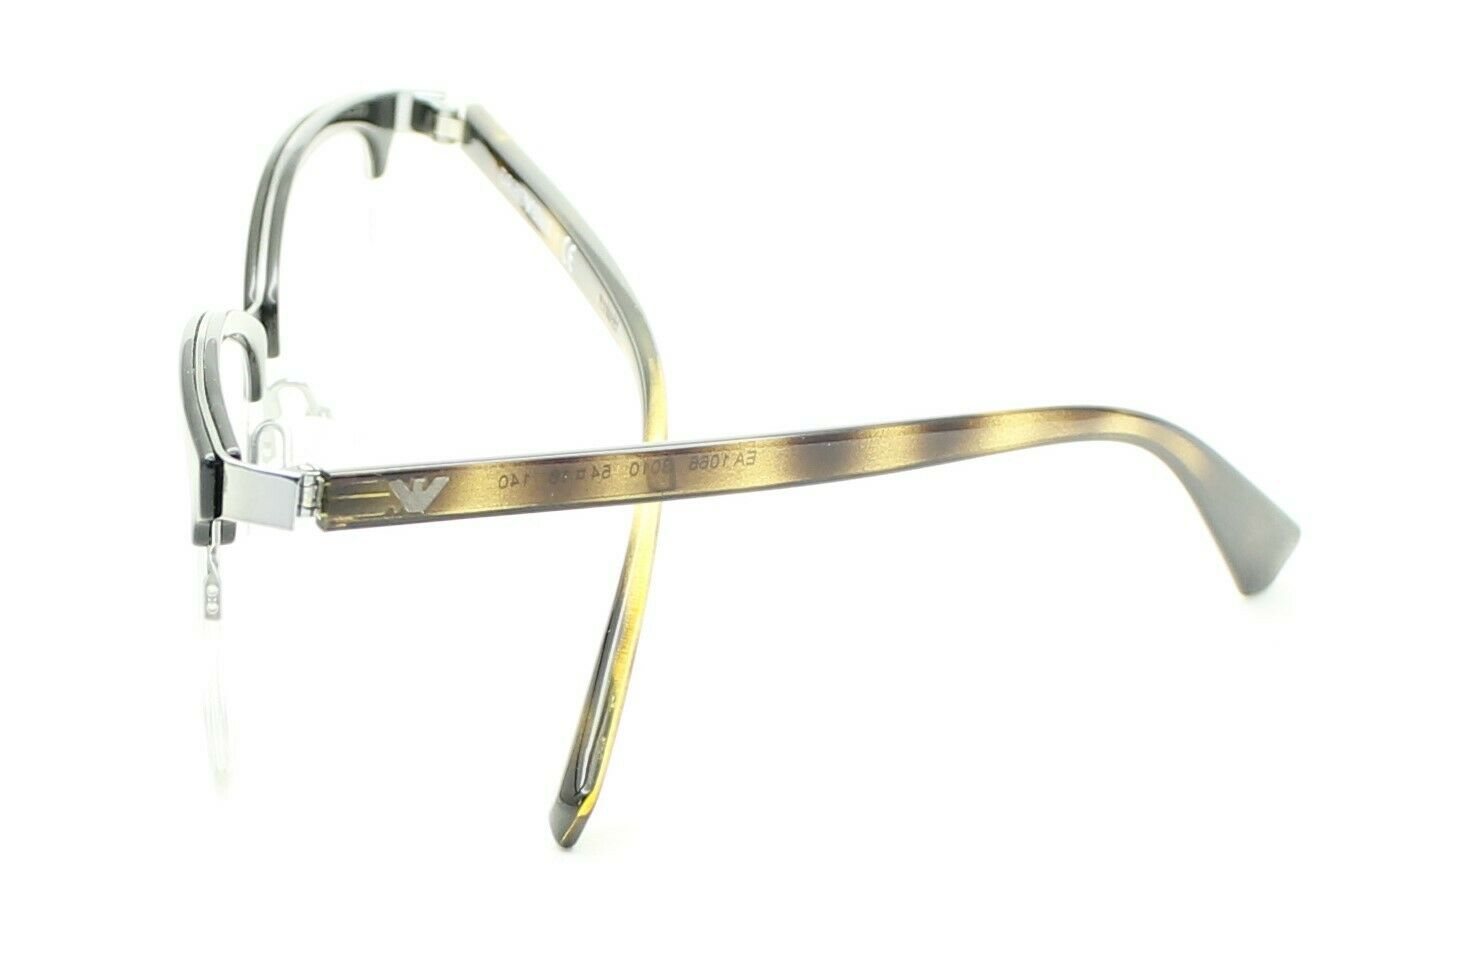 EMPORIO ARMANI EA 1066 3010 54mm Eyewear FRAMES RX Optical Glasses EyeglassesNew